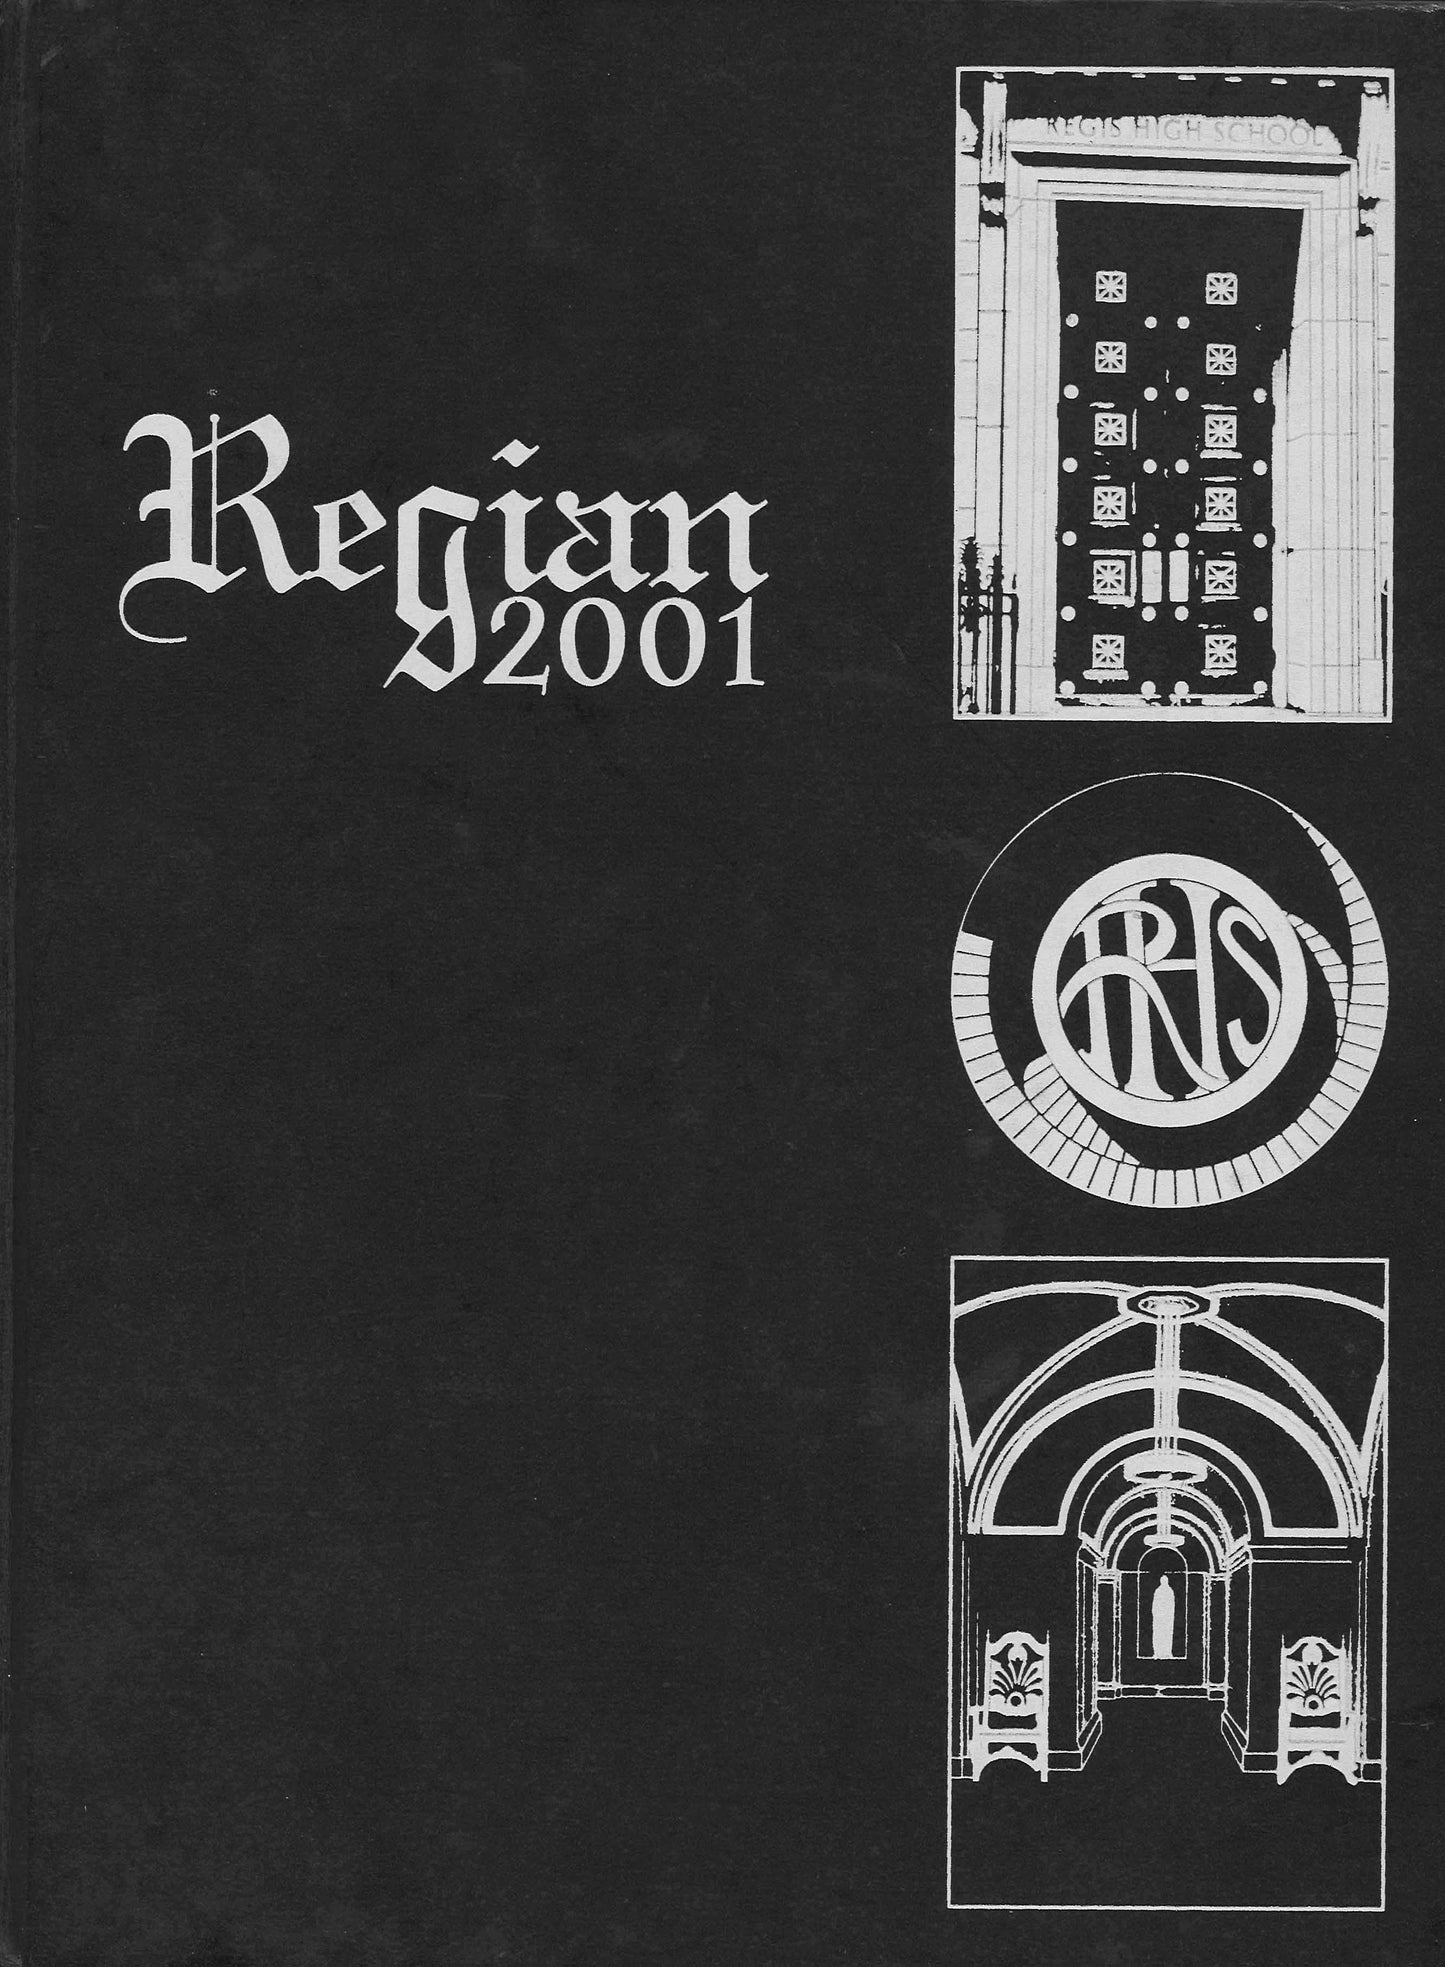 The Regian - 2001